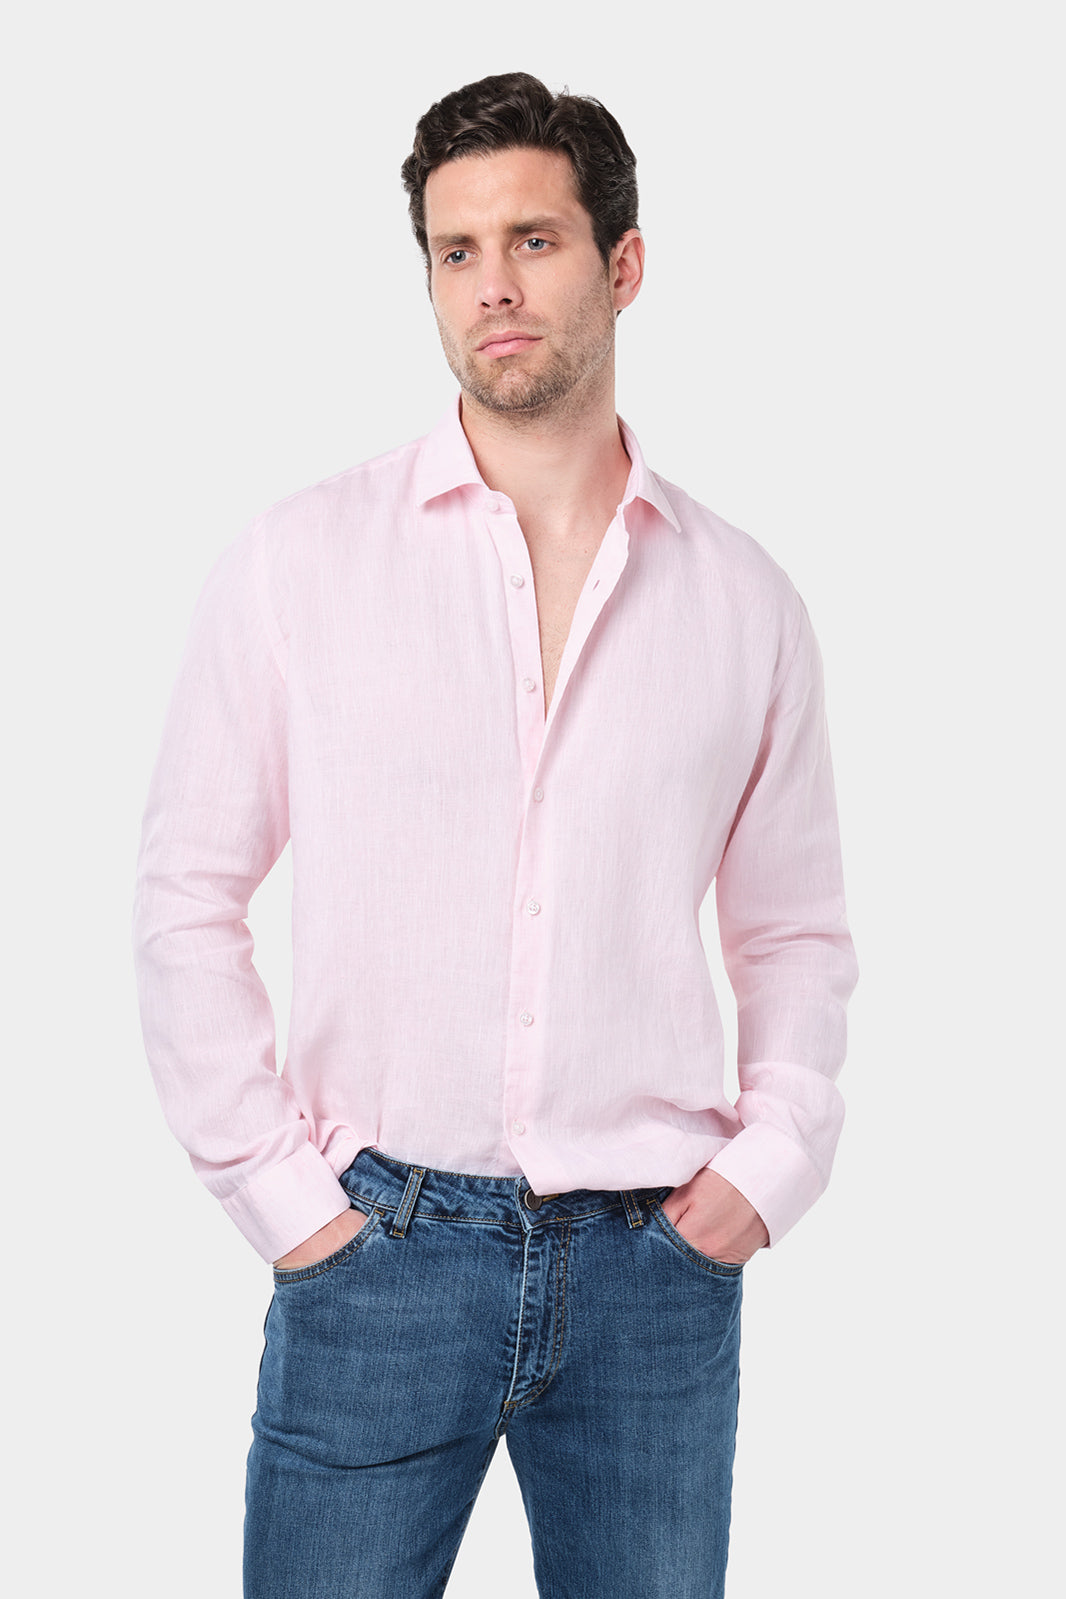  Un homme aux cheveux courts et foncés porte une chemise rose à col traditionnel en lin. Il est assorti à un jean bleu. Il se tient debout contre un fond gris clair uni.